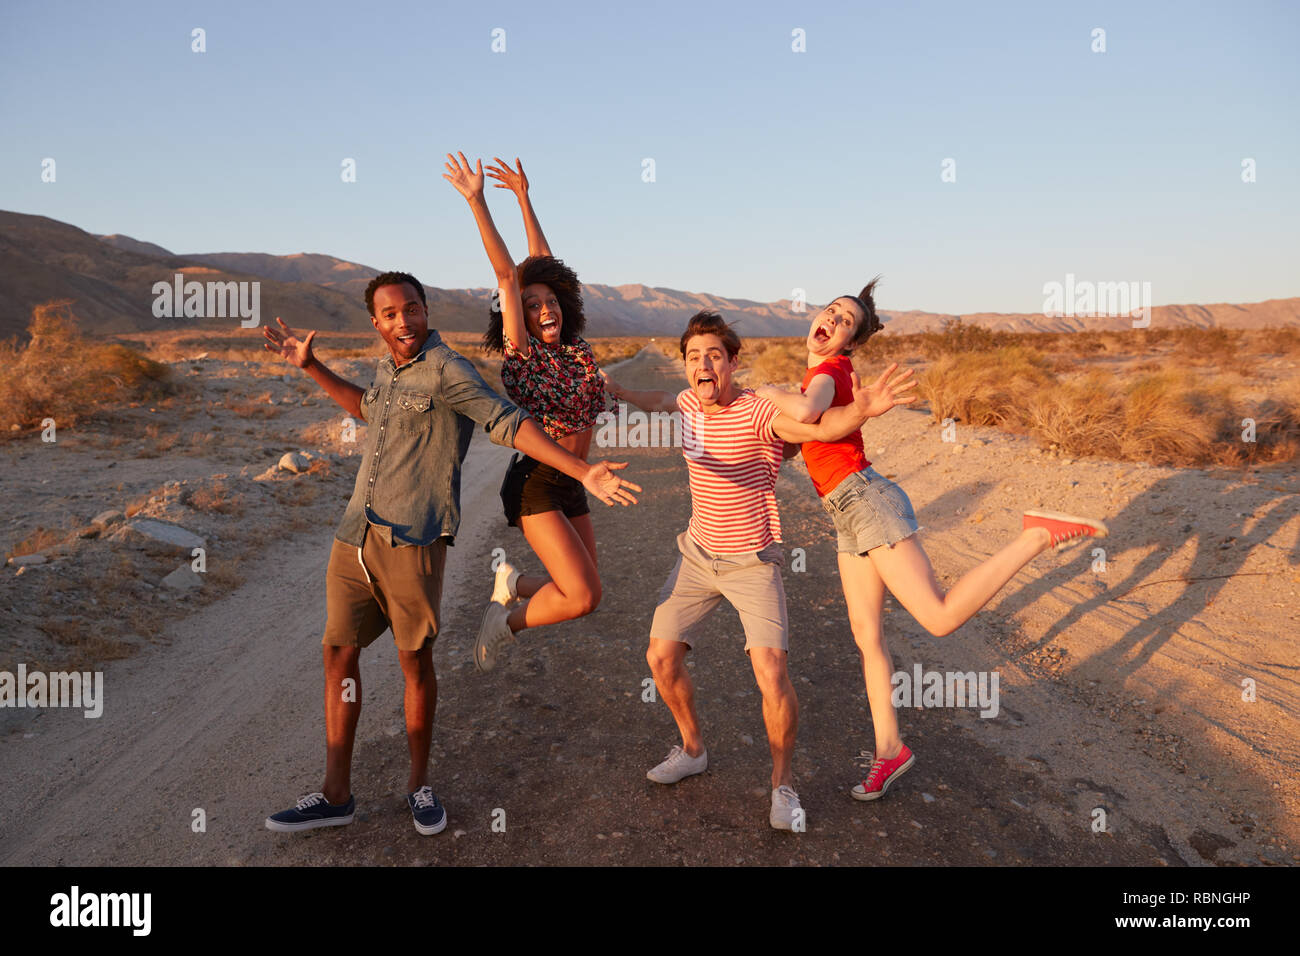 Les amis des jeunes adultes s'amuser substitution pose dans le désert Banque D'Images